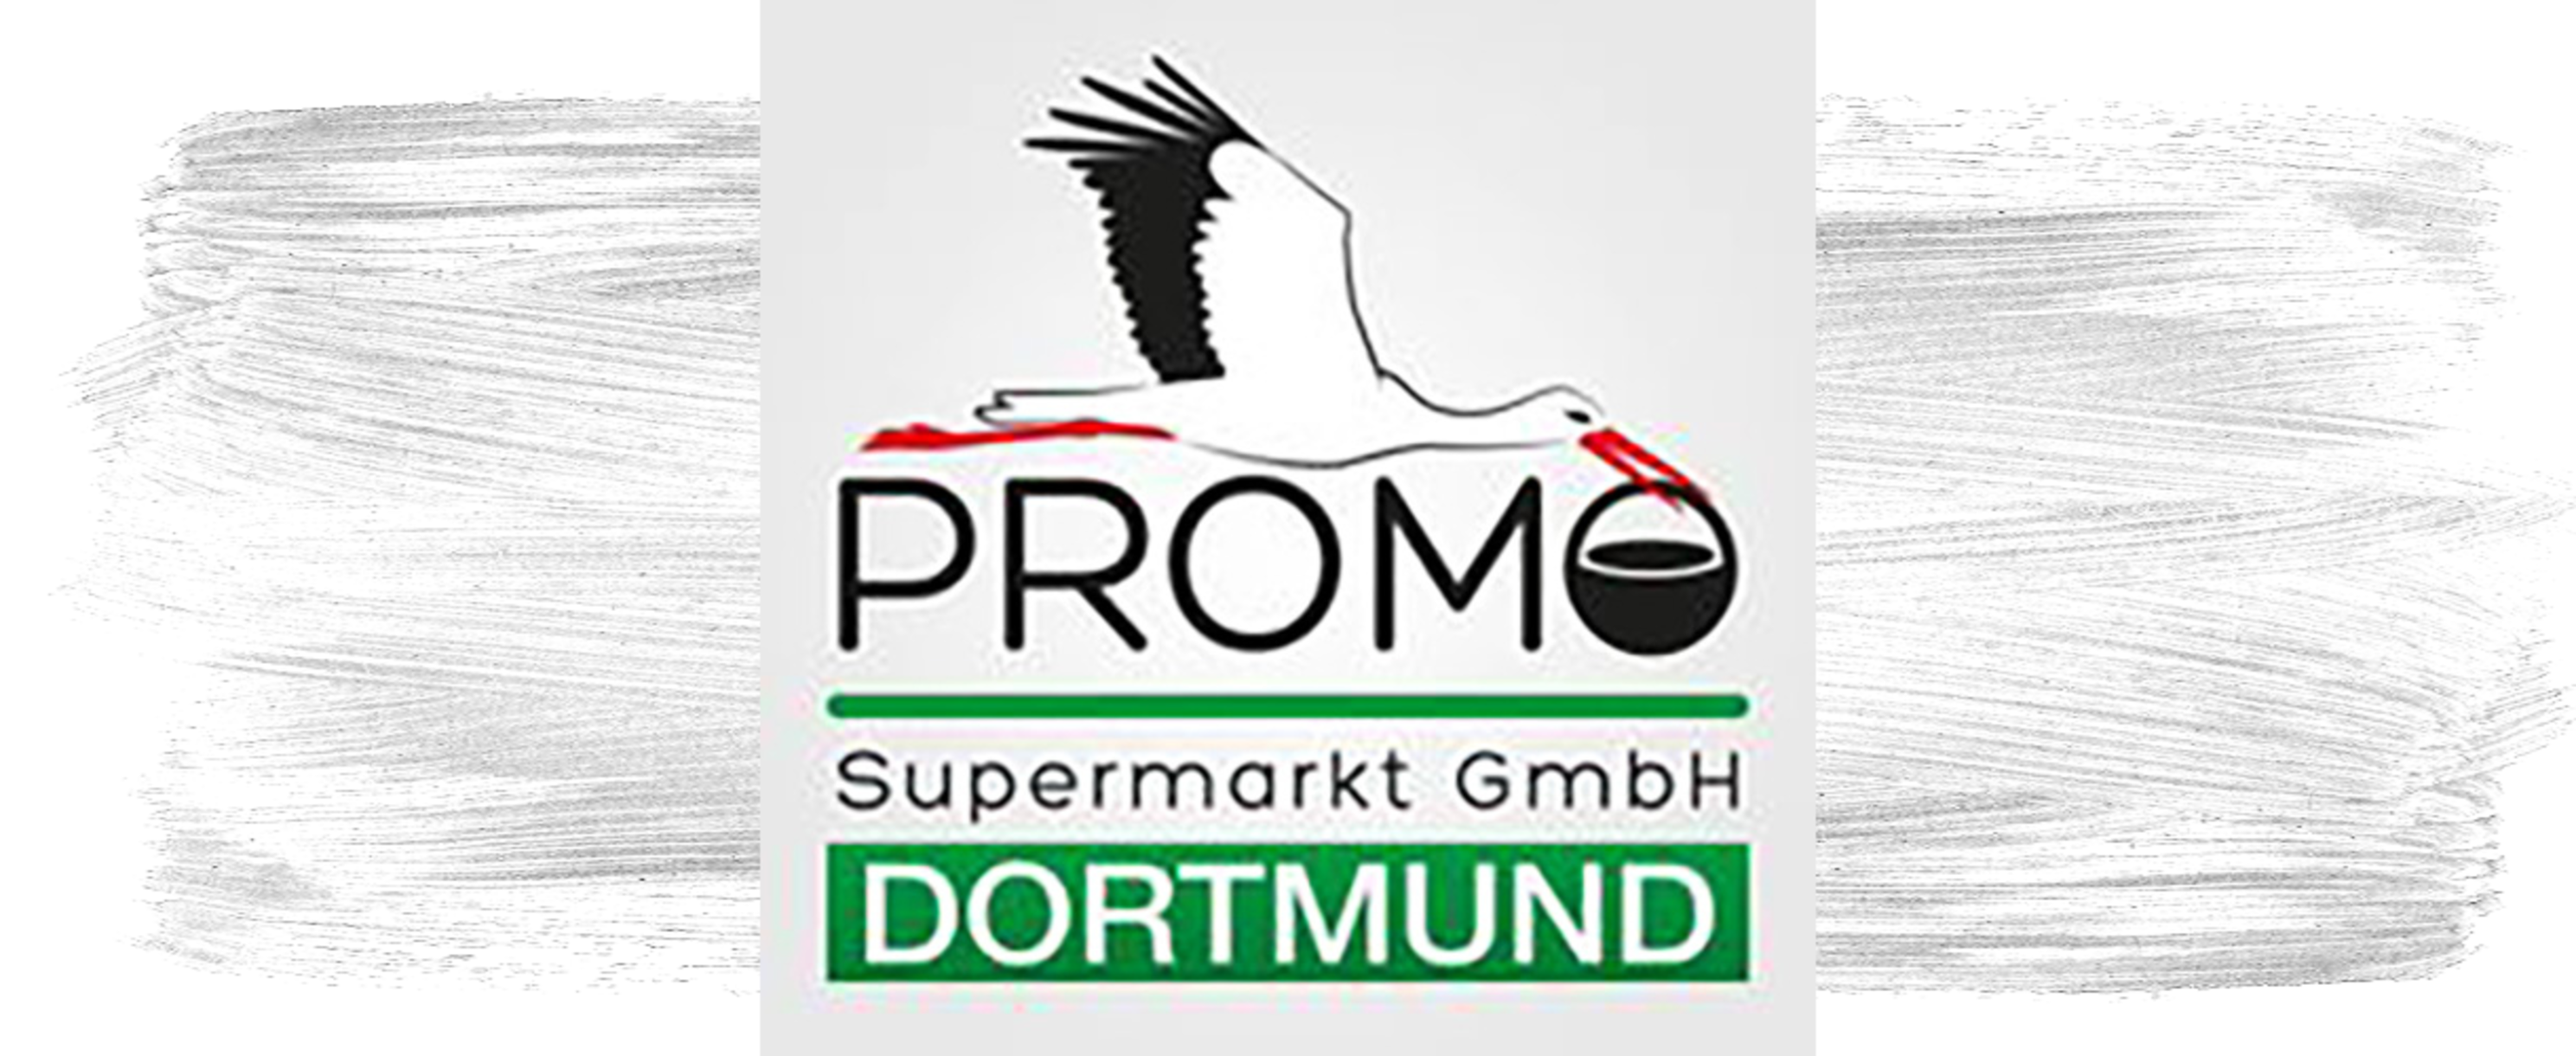 Bild vom Shoplogo Promo Supermarkt GmbH